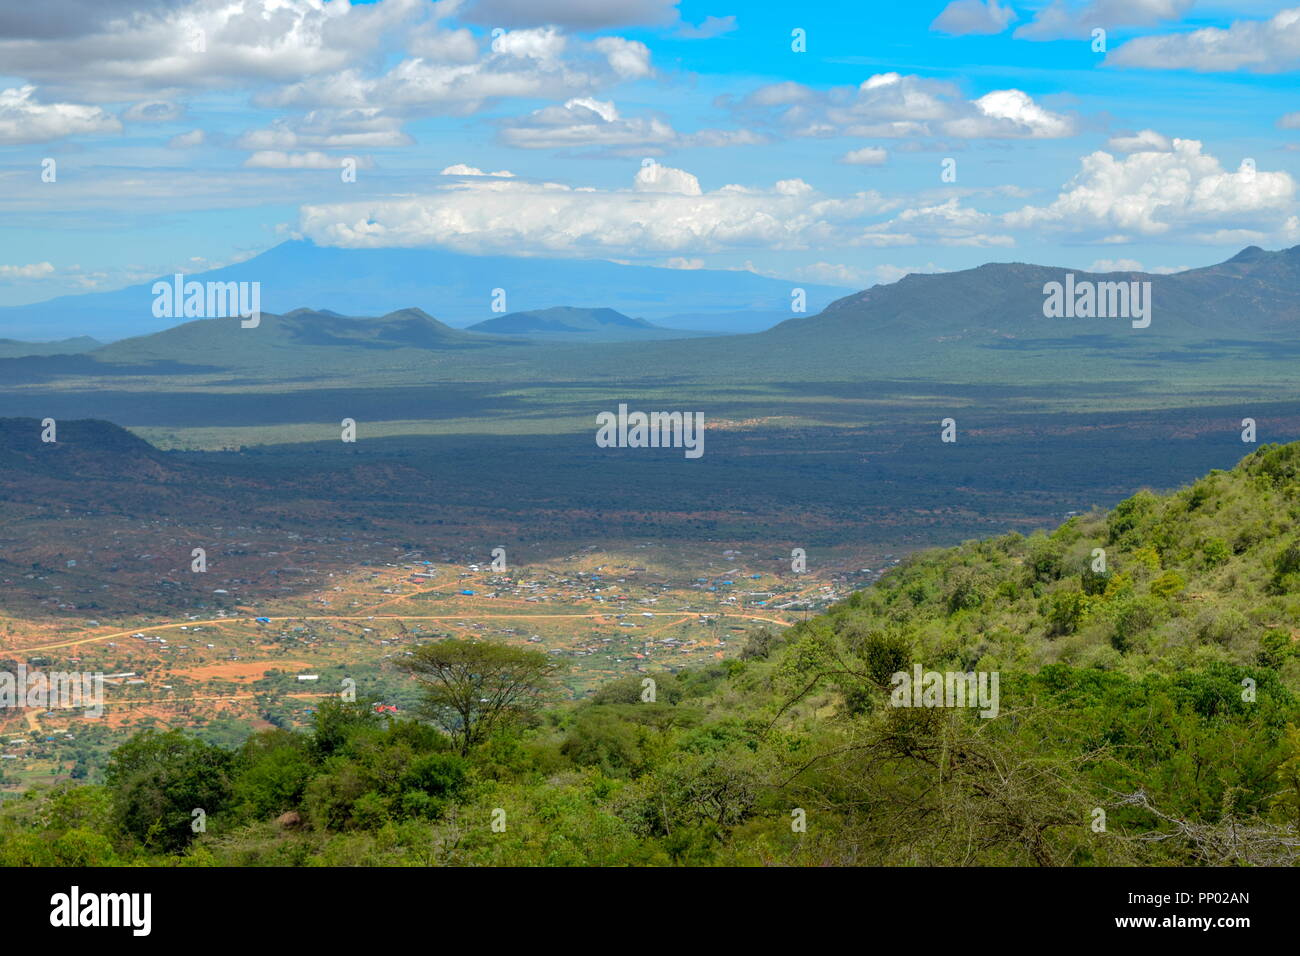 Mount Kilimanjaro seen from Namanga Town, Kenya Stock Photo